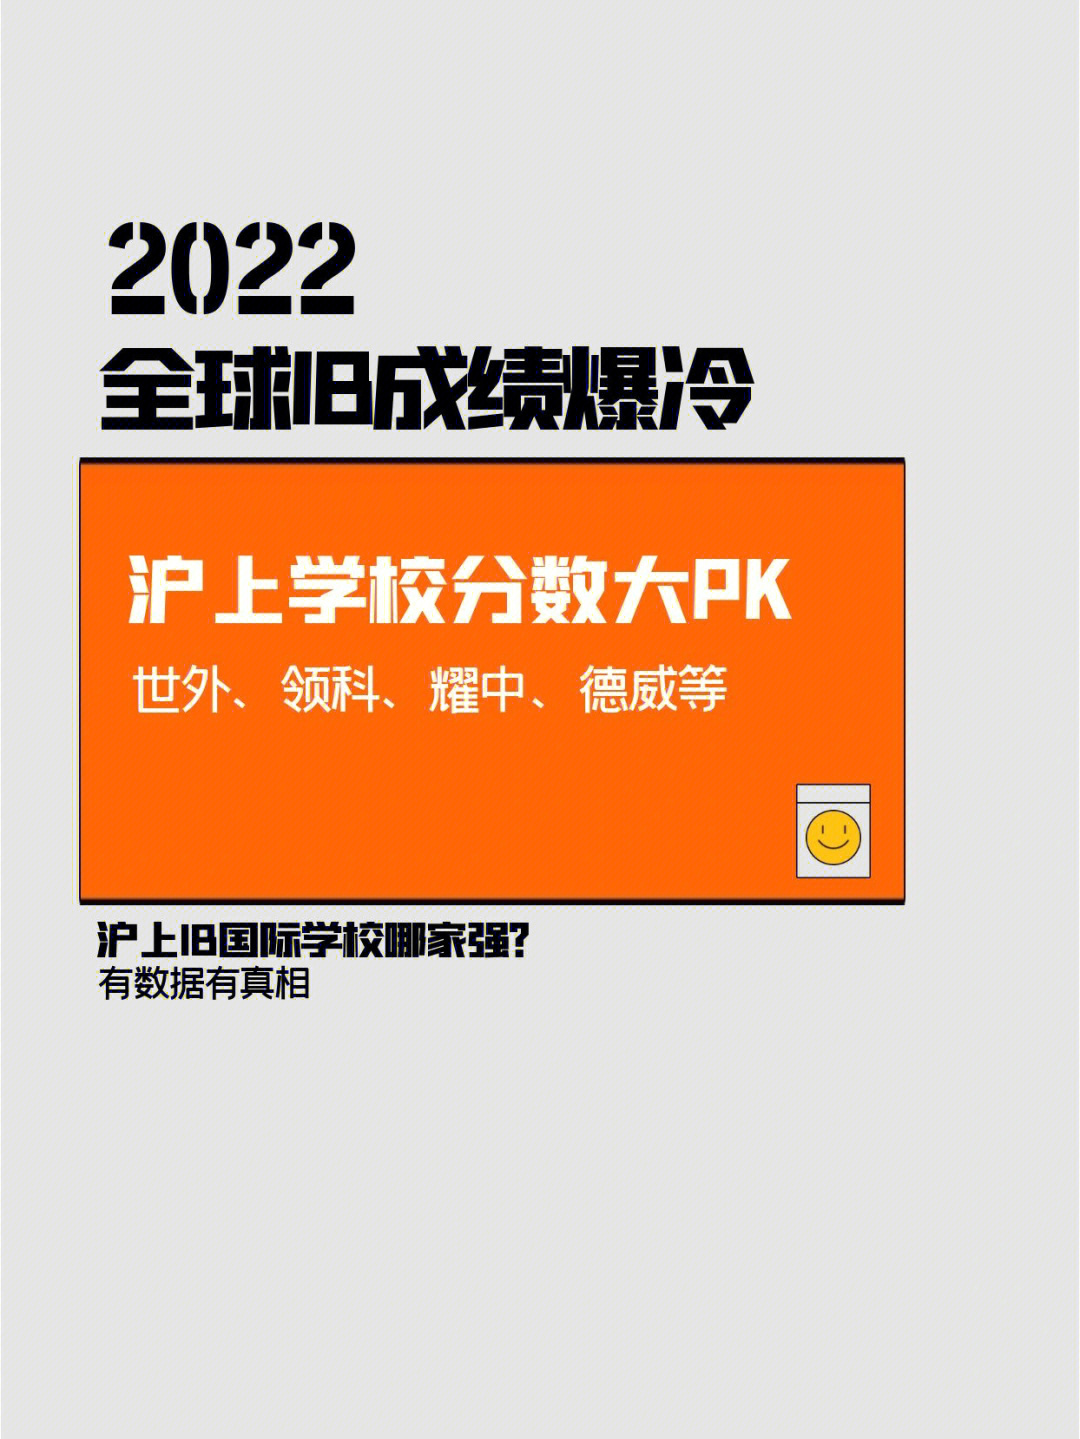 2022全球ib放榜沪上热门学校表现如何